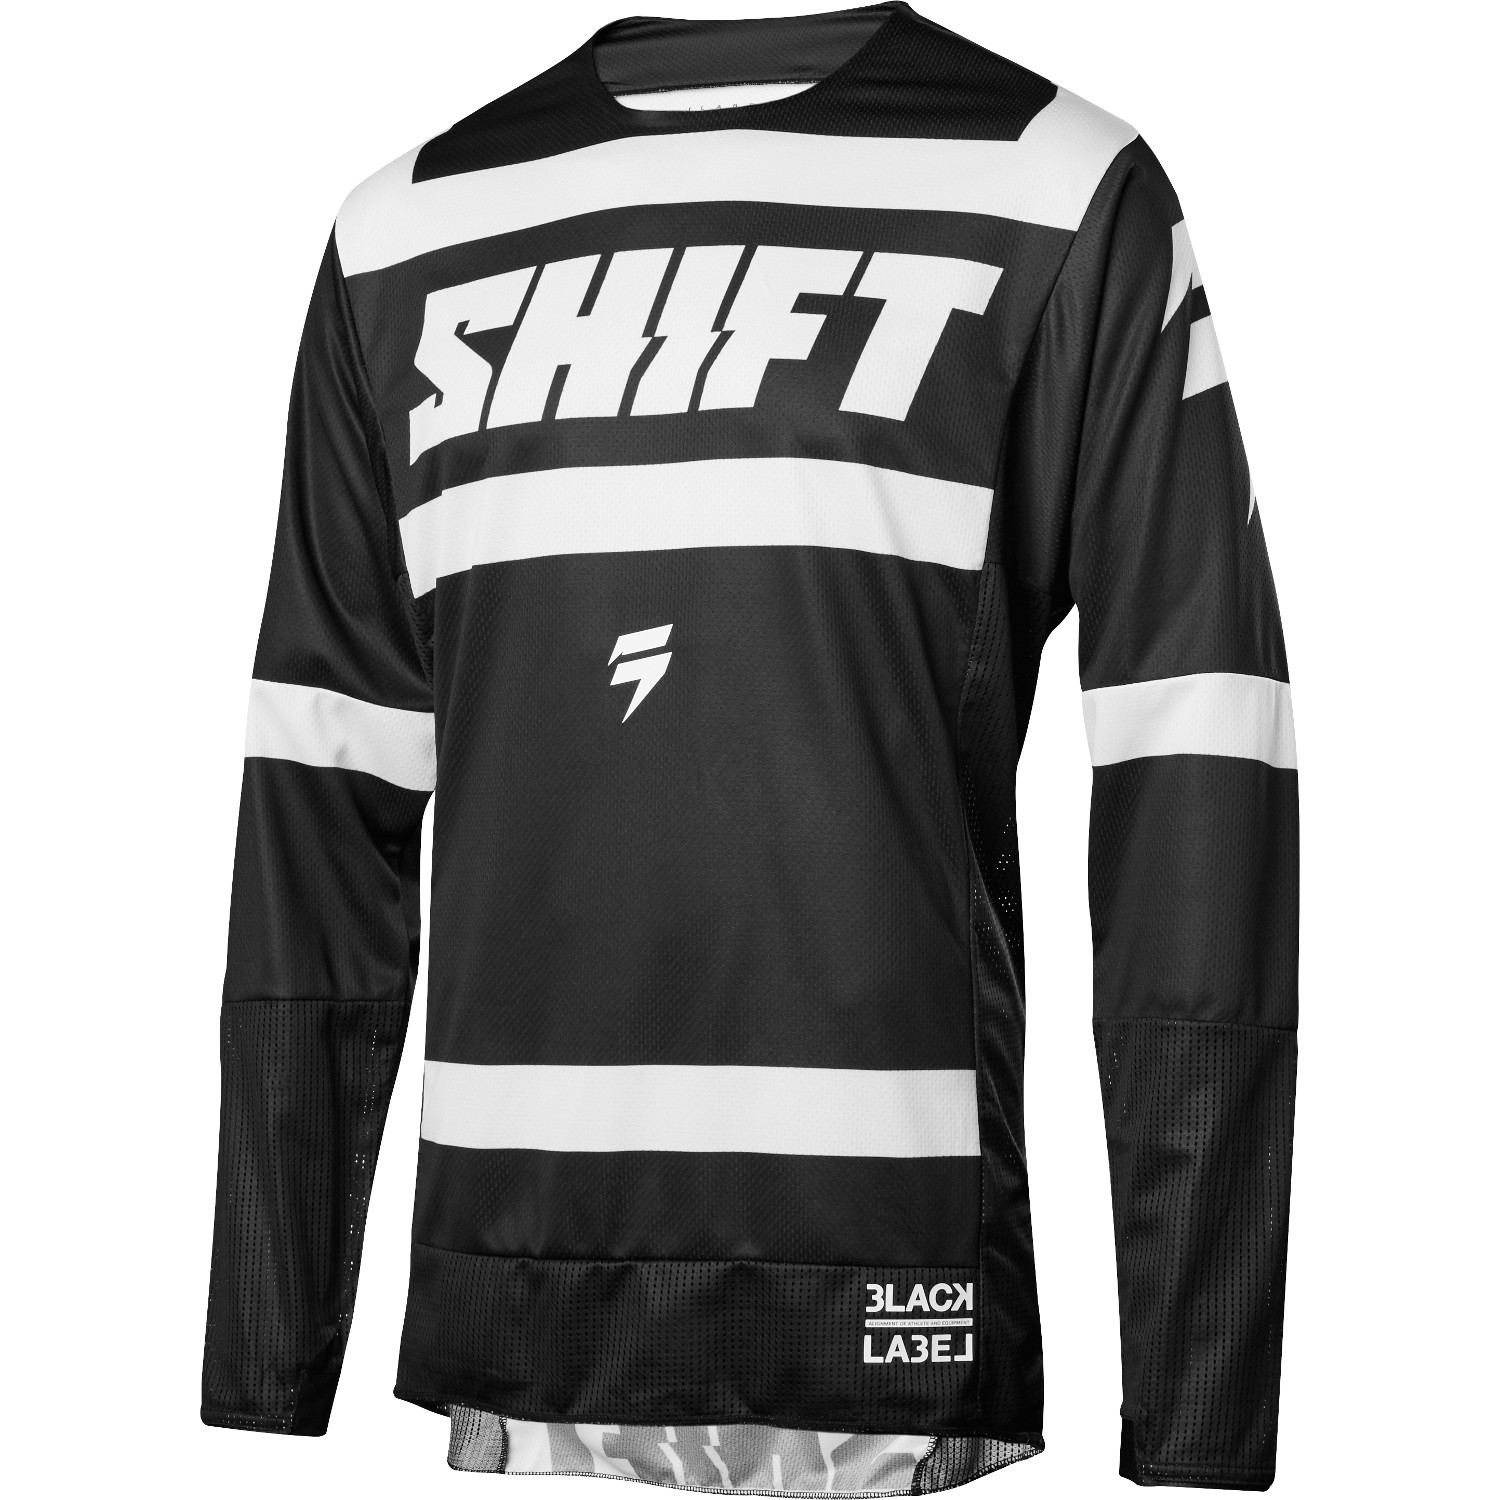 Shift Jersey 3lack Label Strike - Black/White